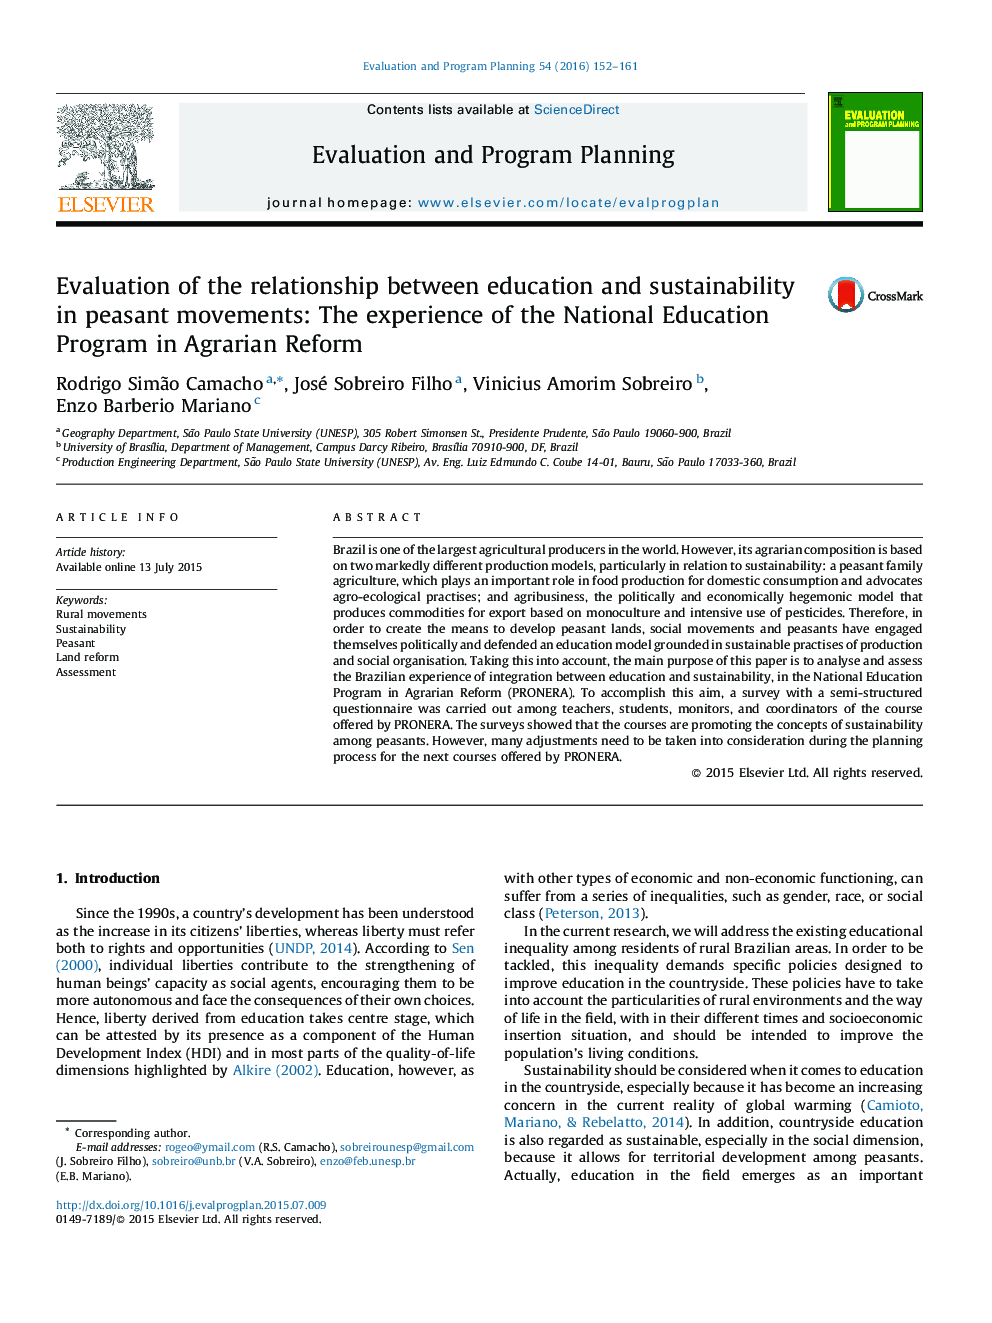 بررسی رابطه بین آموزش و پرورش و توسعه پایدار در جنبش های دهقانی: تجربه ملی برنامه آموزش و پرورش در اصلاحات ارضى